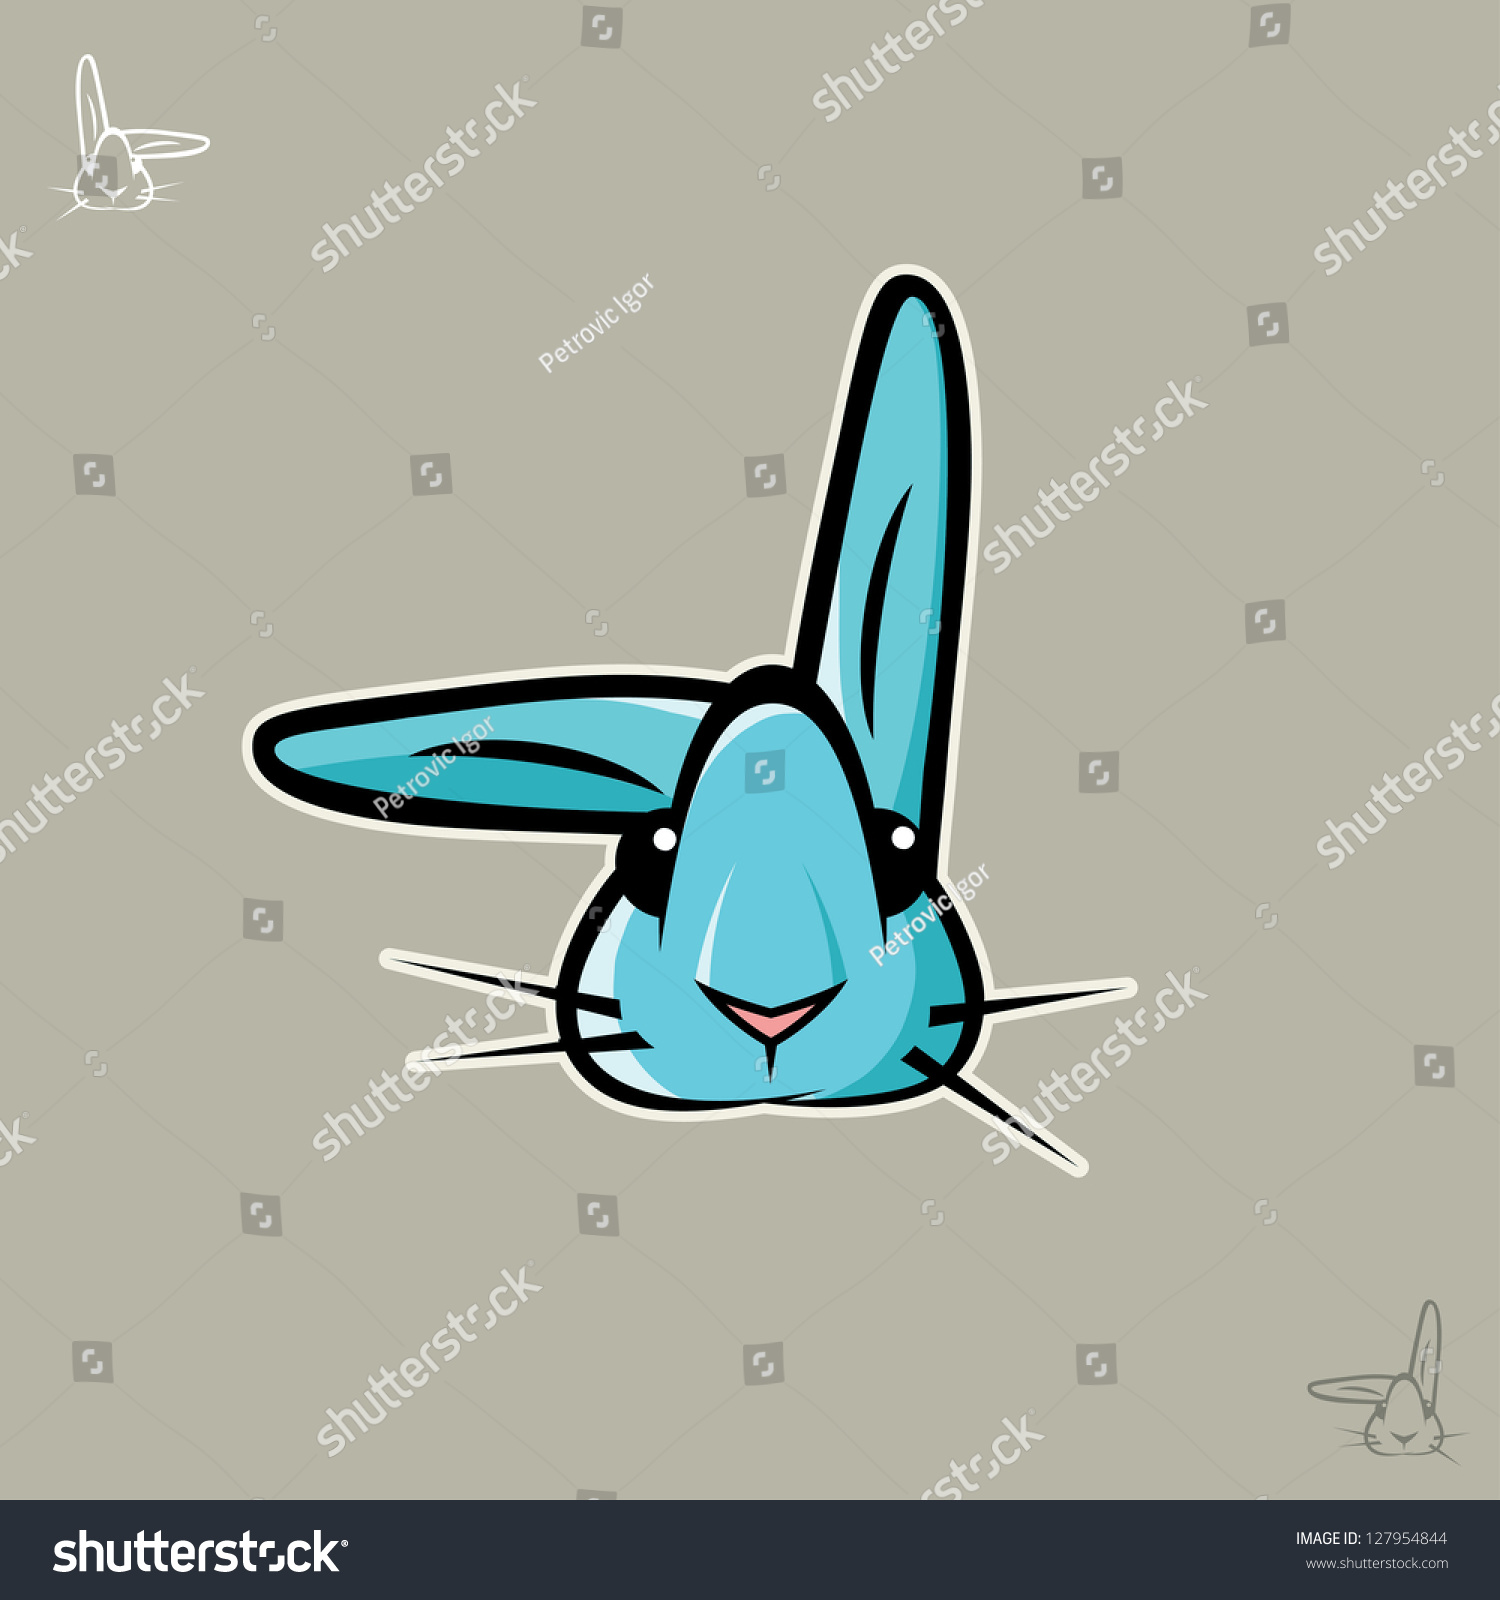 Cute Blue Rabbit Vector Illustration 127954844 Shutterstock